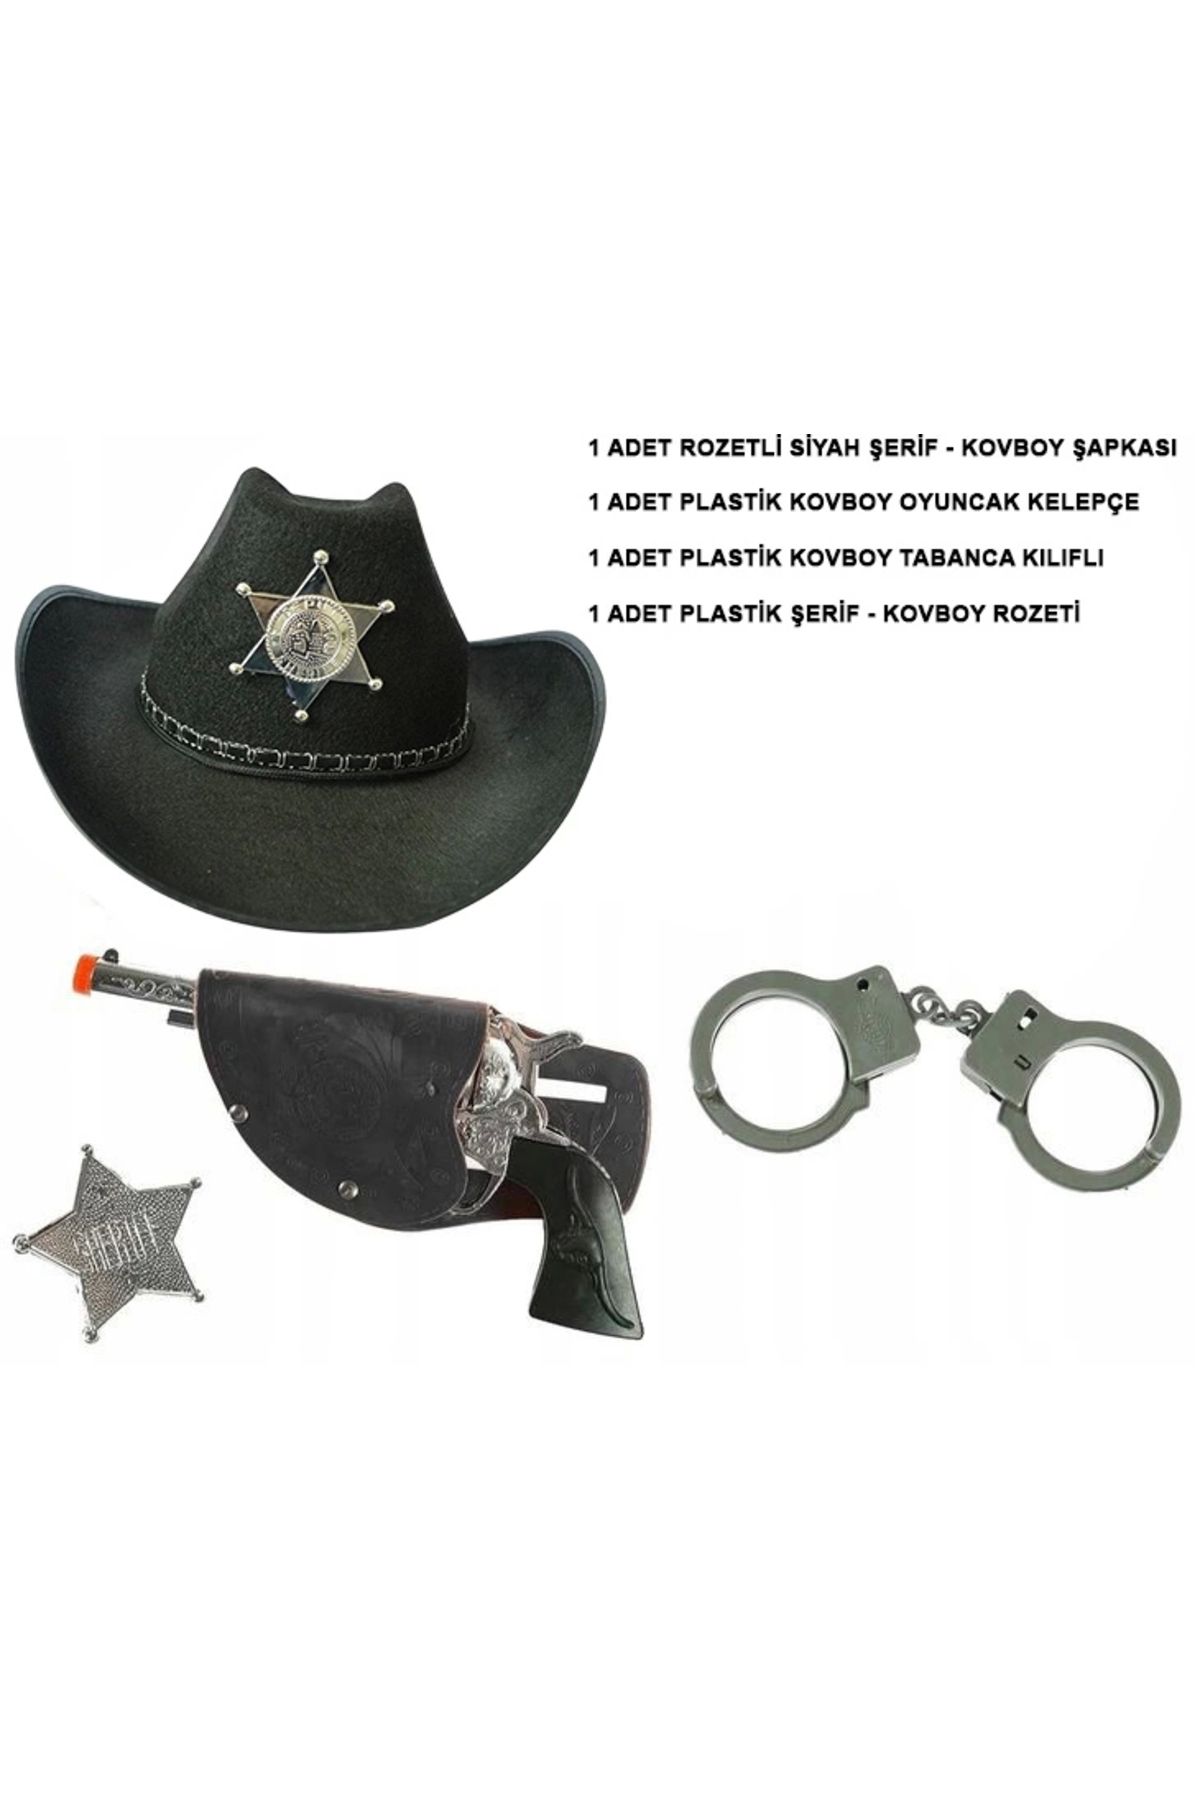 Genel Markalar Çocuk Boy Siyah Şerif-kovboy Şapka Rozet Ve Seti 4 Parça (4462)